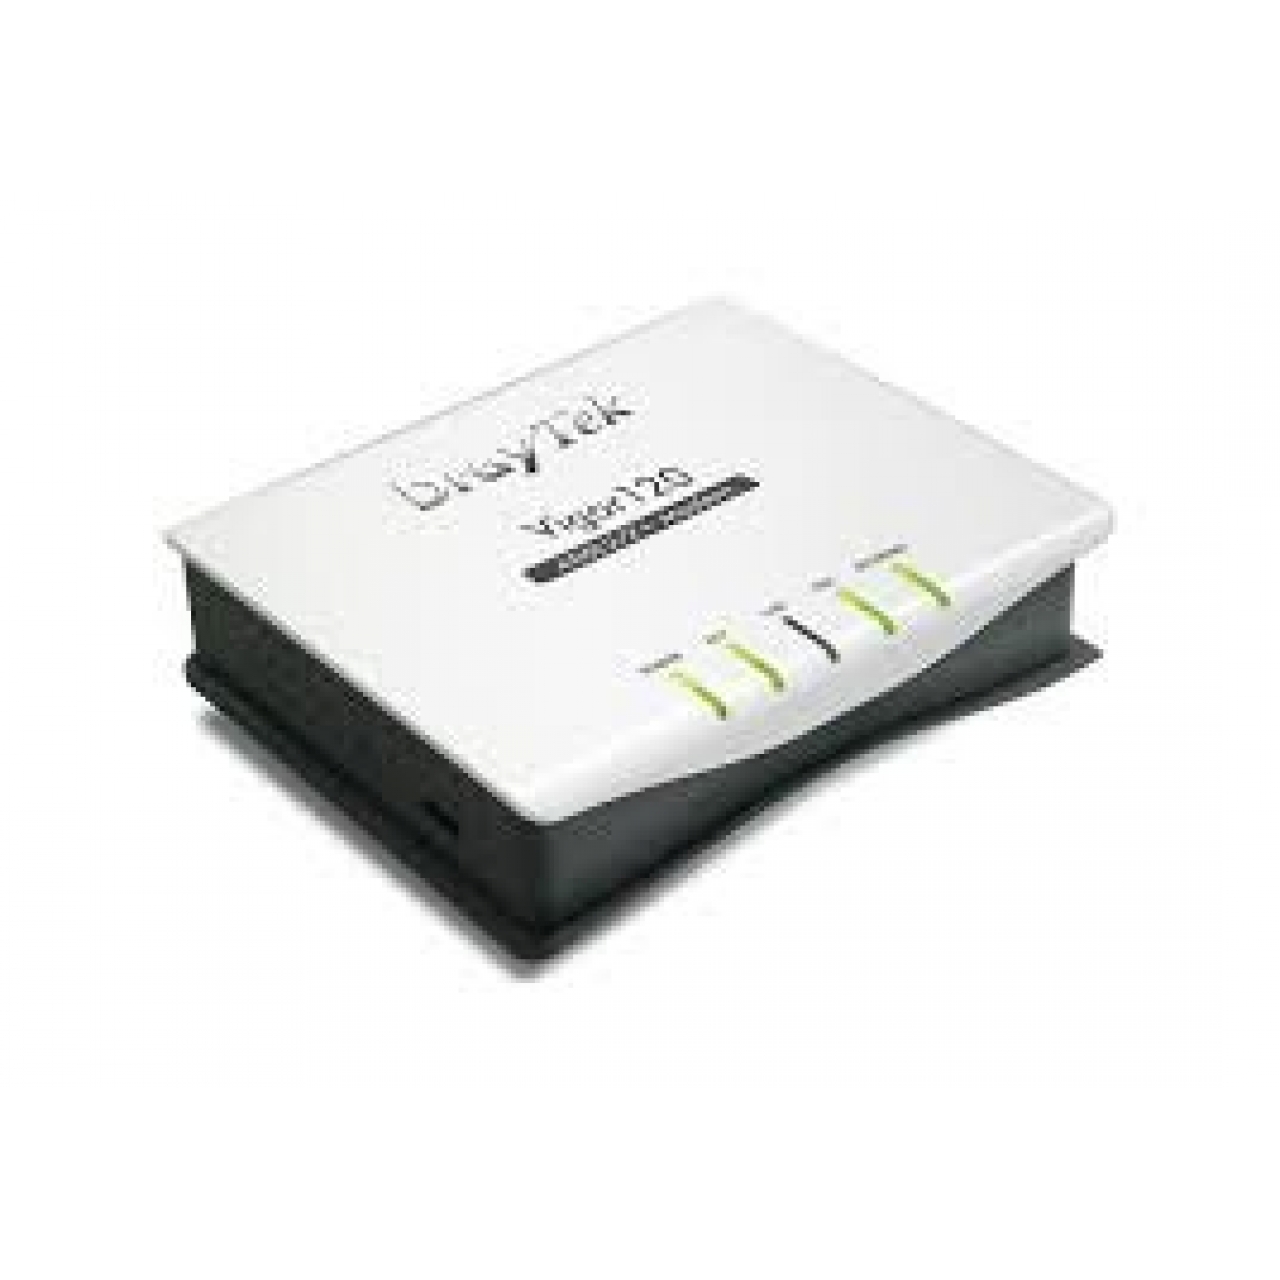 DRAYTEK Vigor 120 ADSL2+ Router Modem